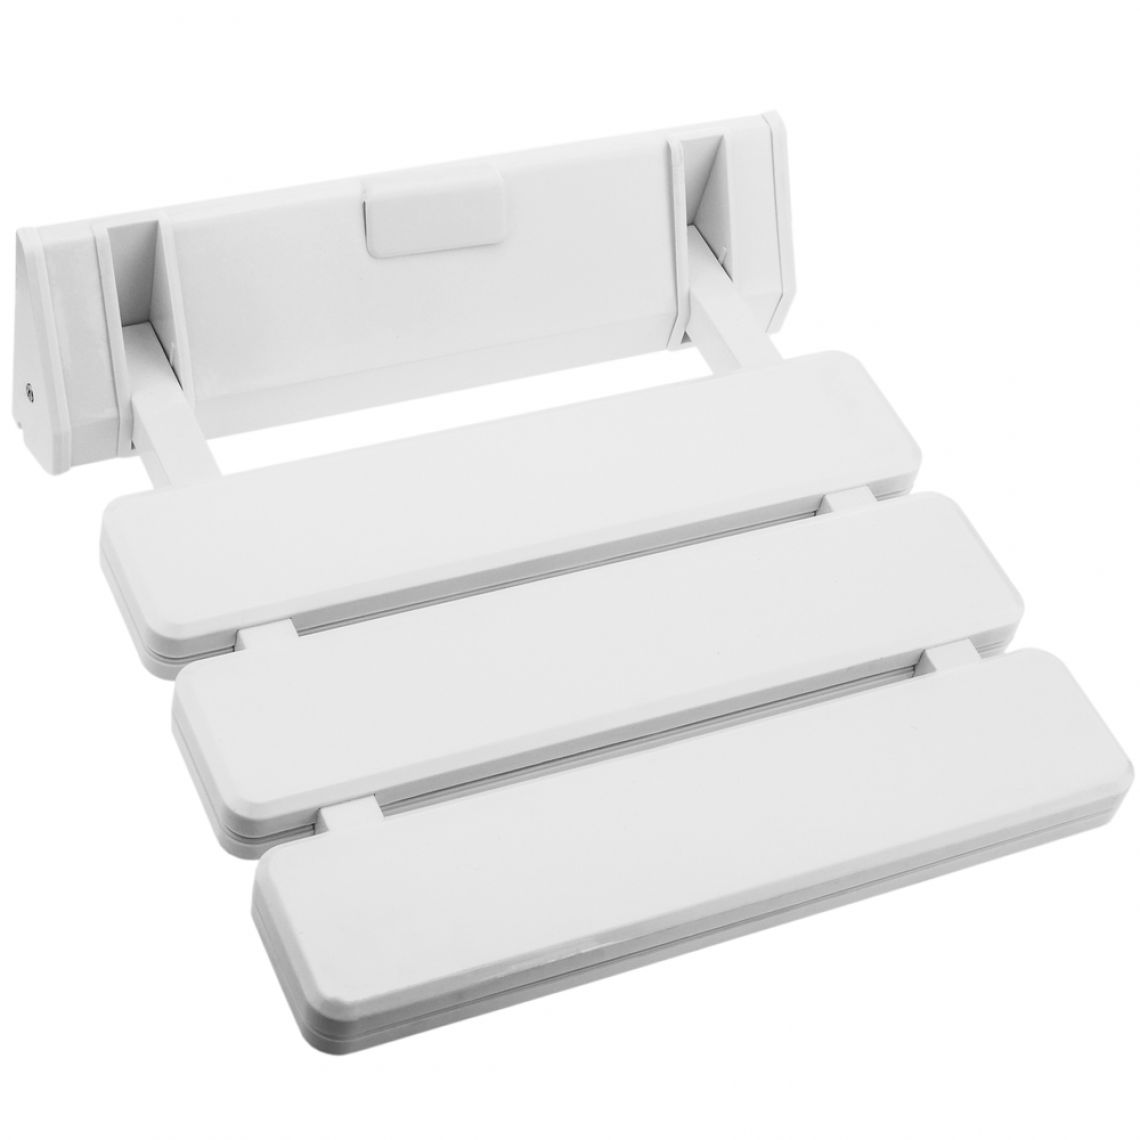 Primematik - Siège de douche rabattable. Chaise pliant en plastique et aluminium blanc 320x328mm - Tabourets